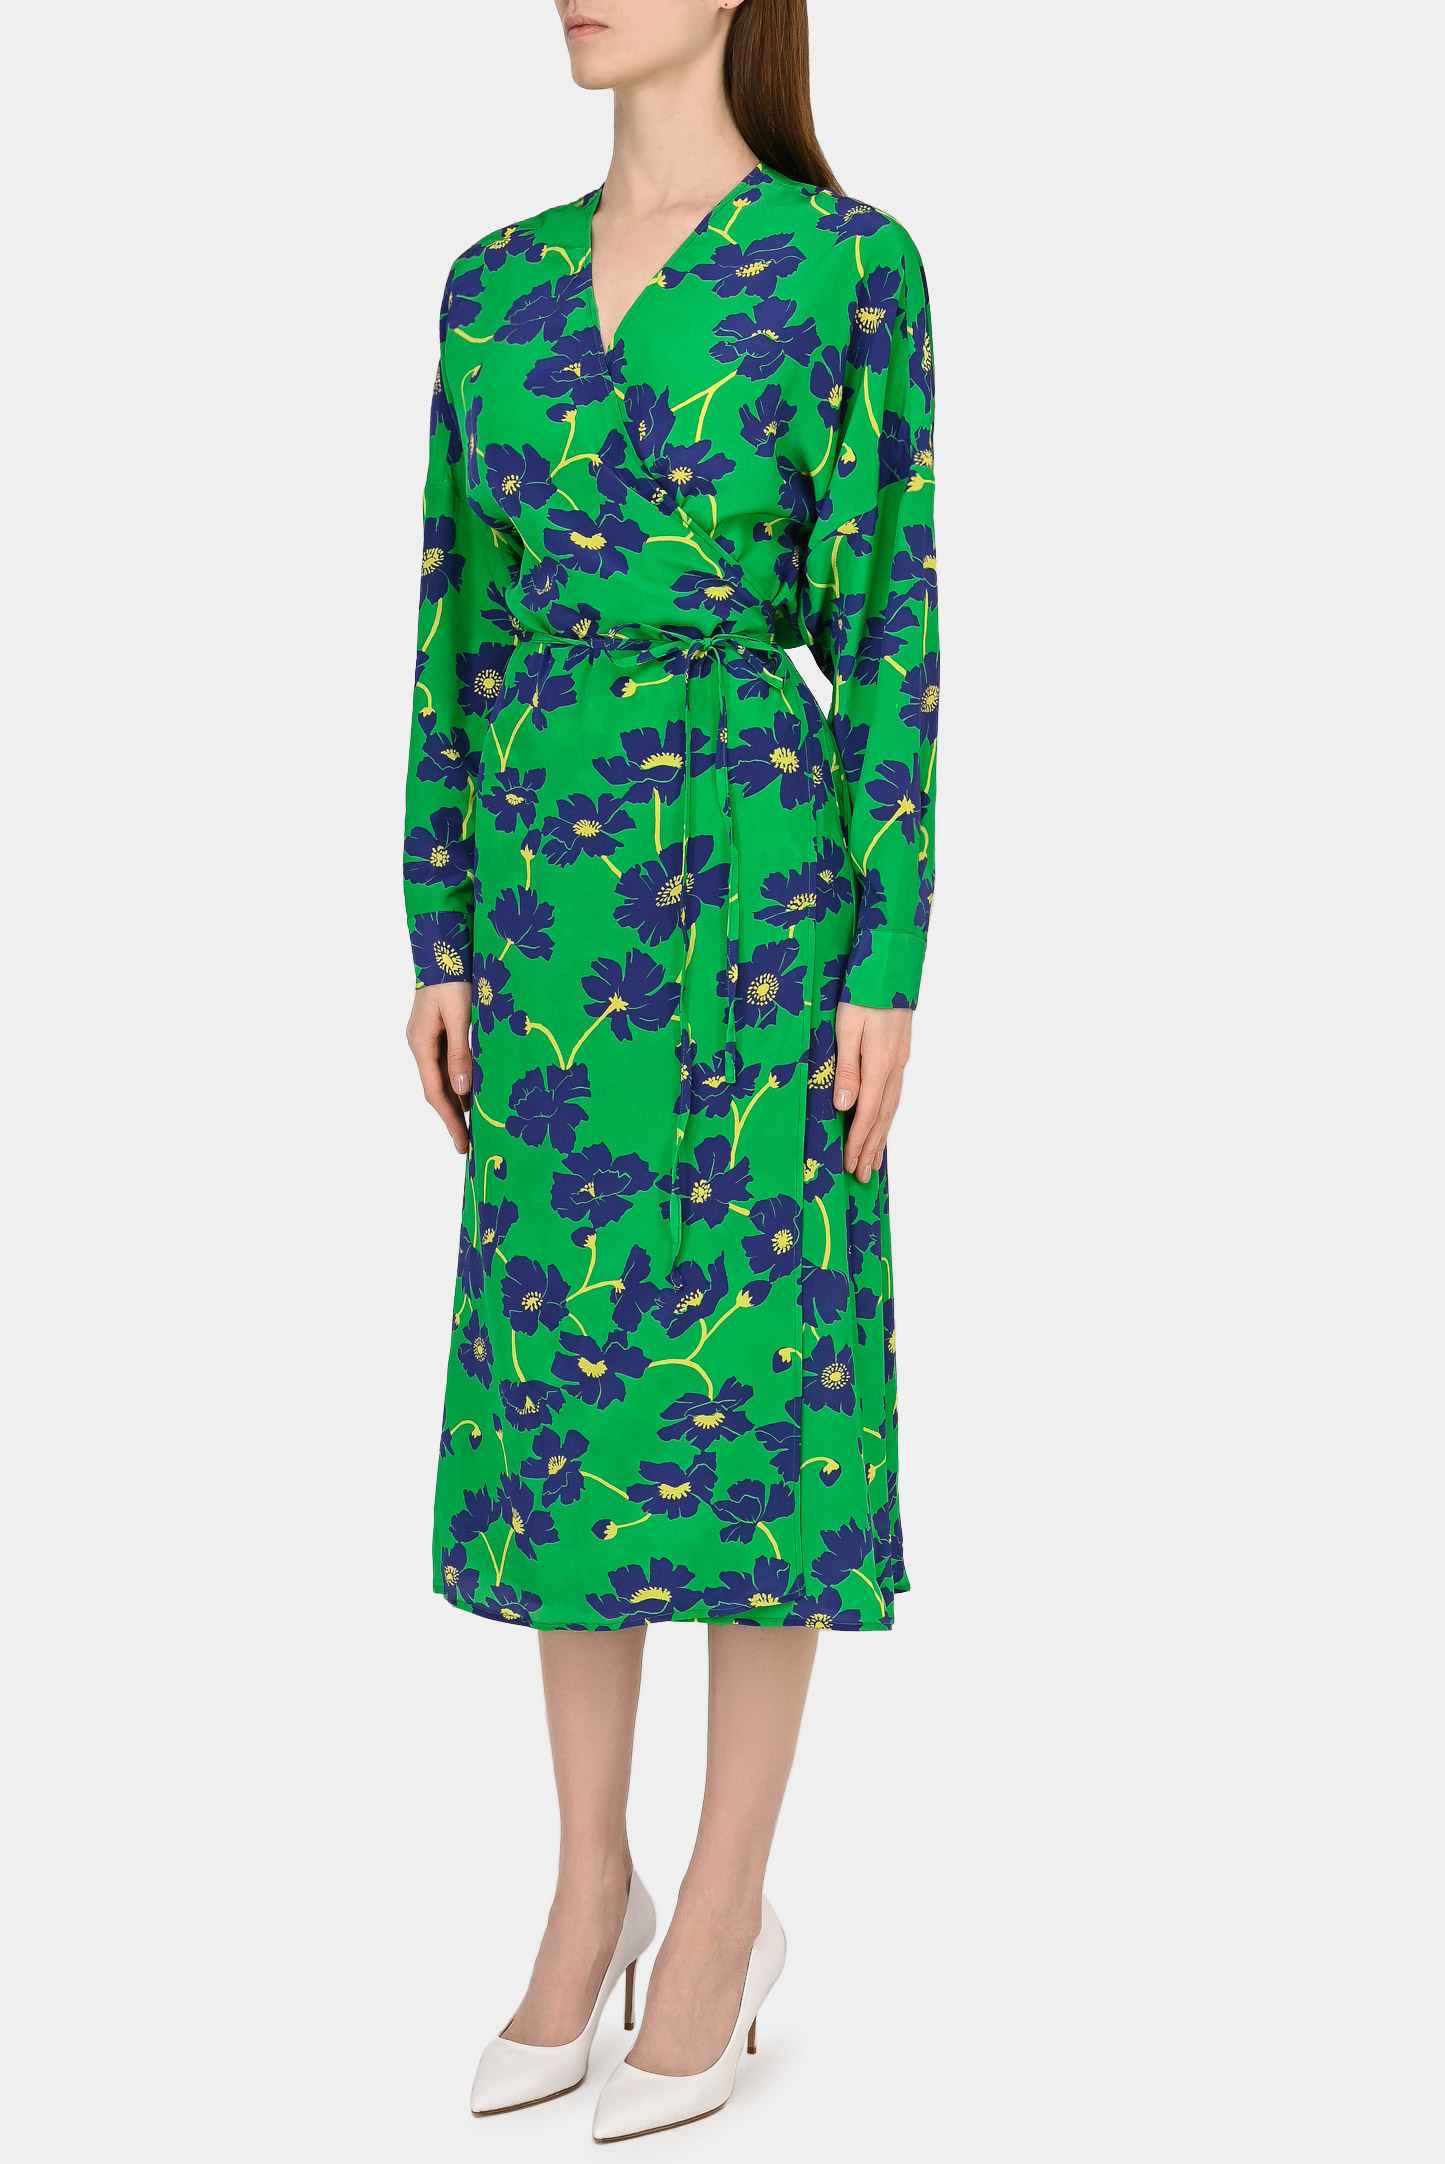 Платье P.A.R.O.S.H. D724283 SURPLUS, цвет: Зеленый, Женский